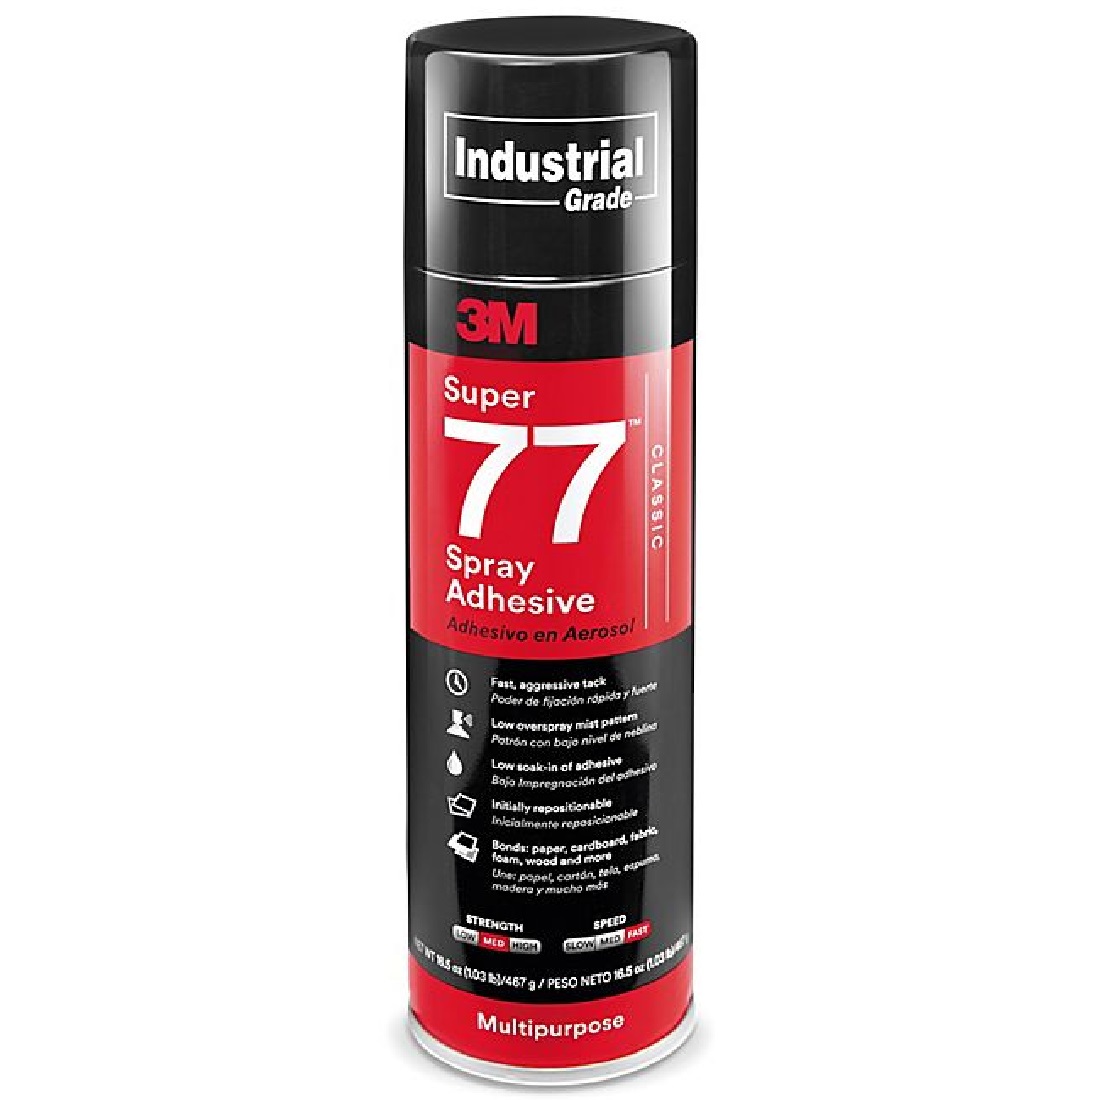 3M Super 77 Multipurpose Adhesive Spray 375g